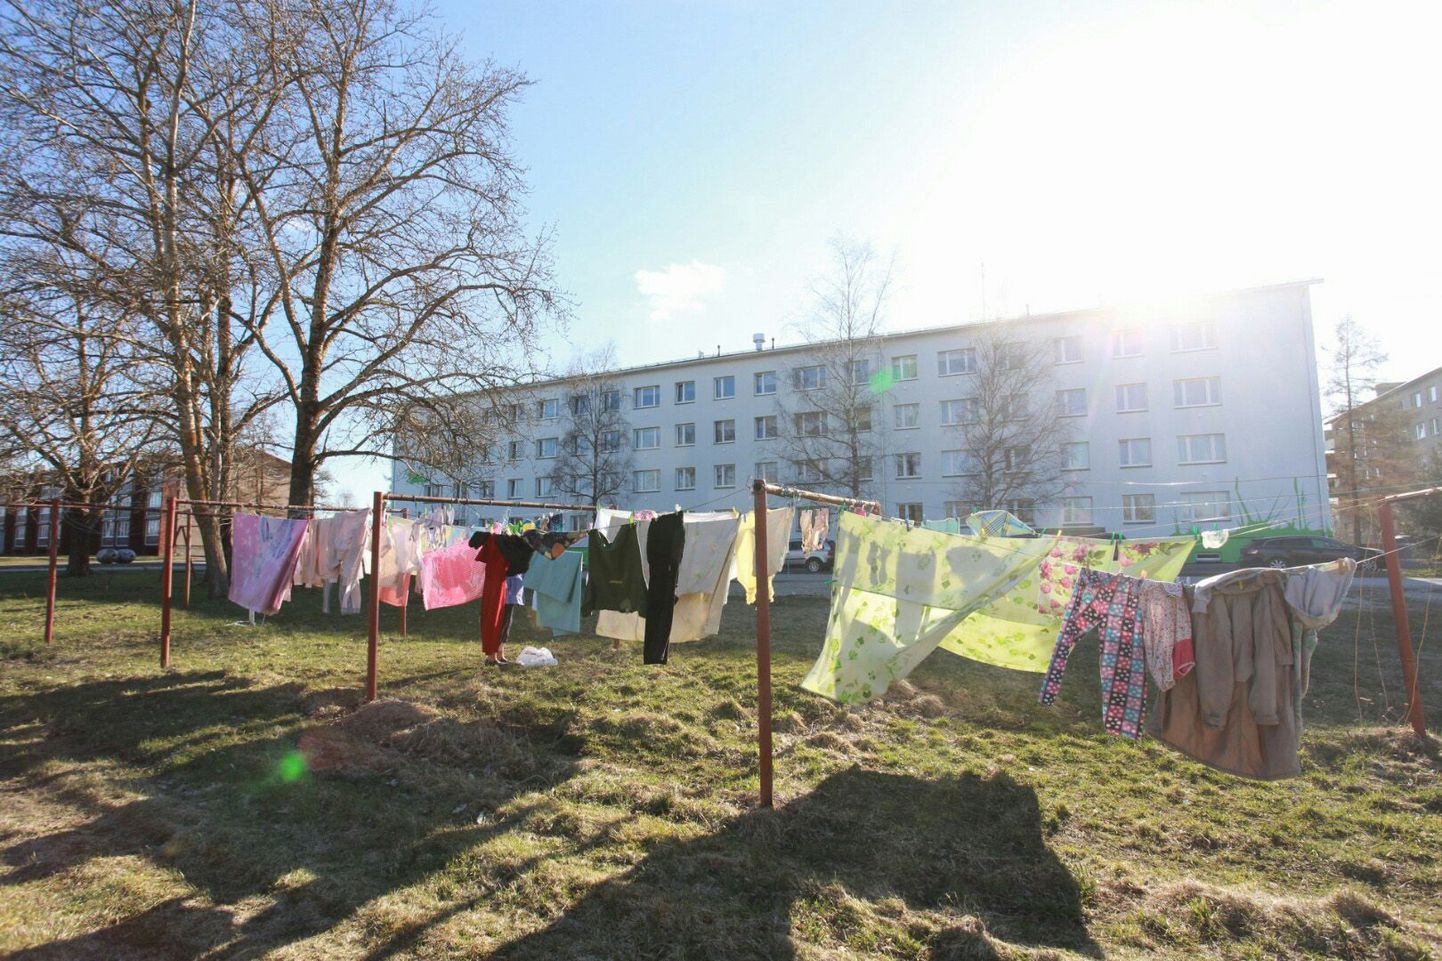 Квартиры на улице Леннуки в Раквере были сняты для двух семей беженцев. После того, как семьи уехали, в них поселили новых беженцев.